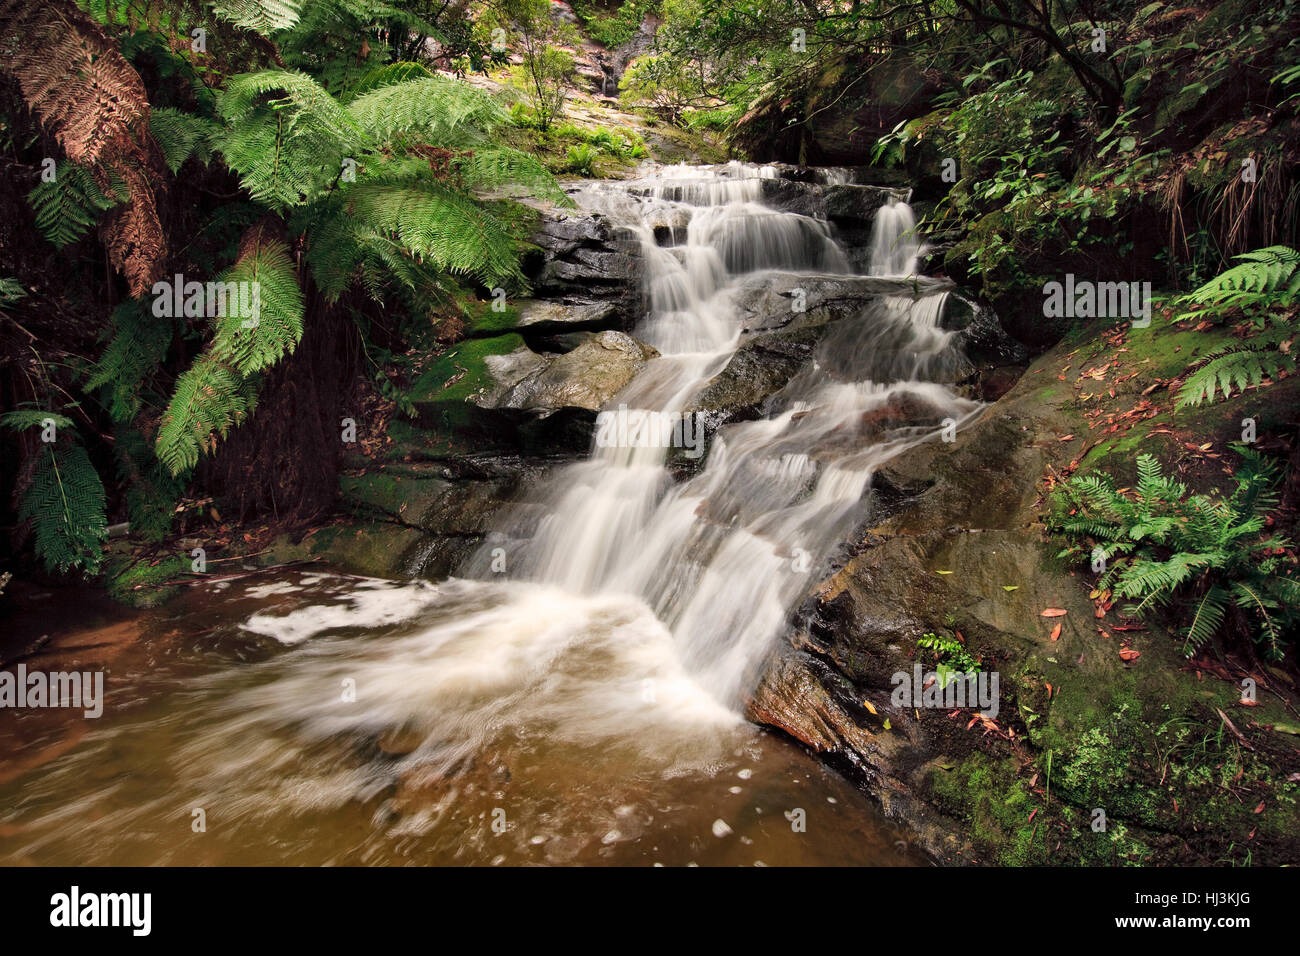 Cascate del flusso verso il basso di un pendio roccioso in un australiano foresta pluviale temperata. Foto Stock